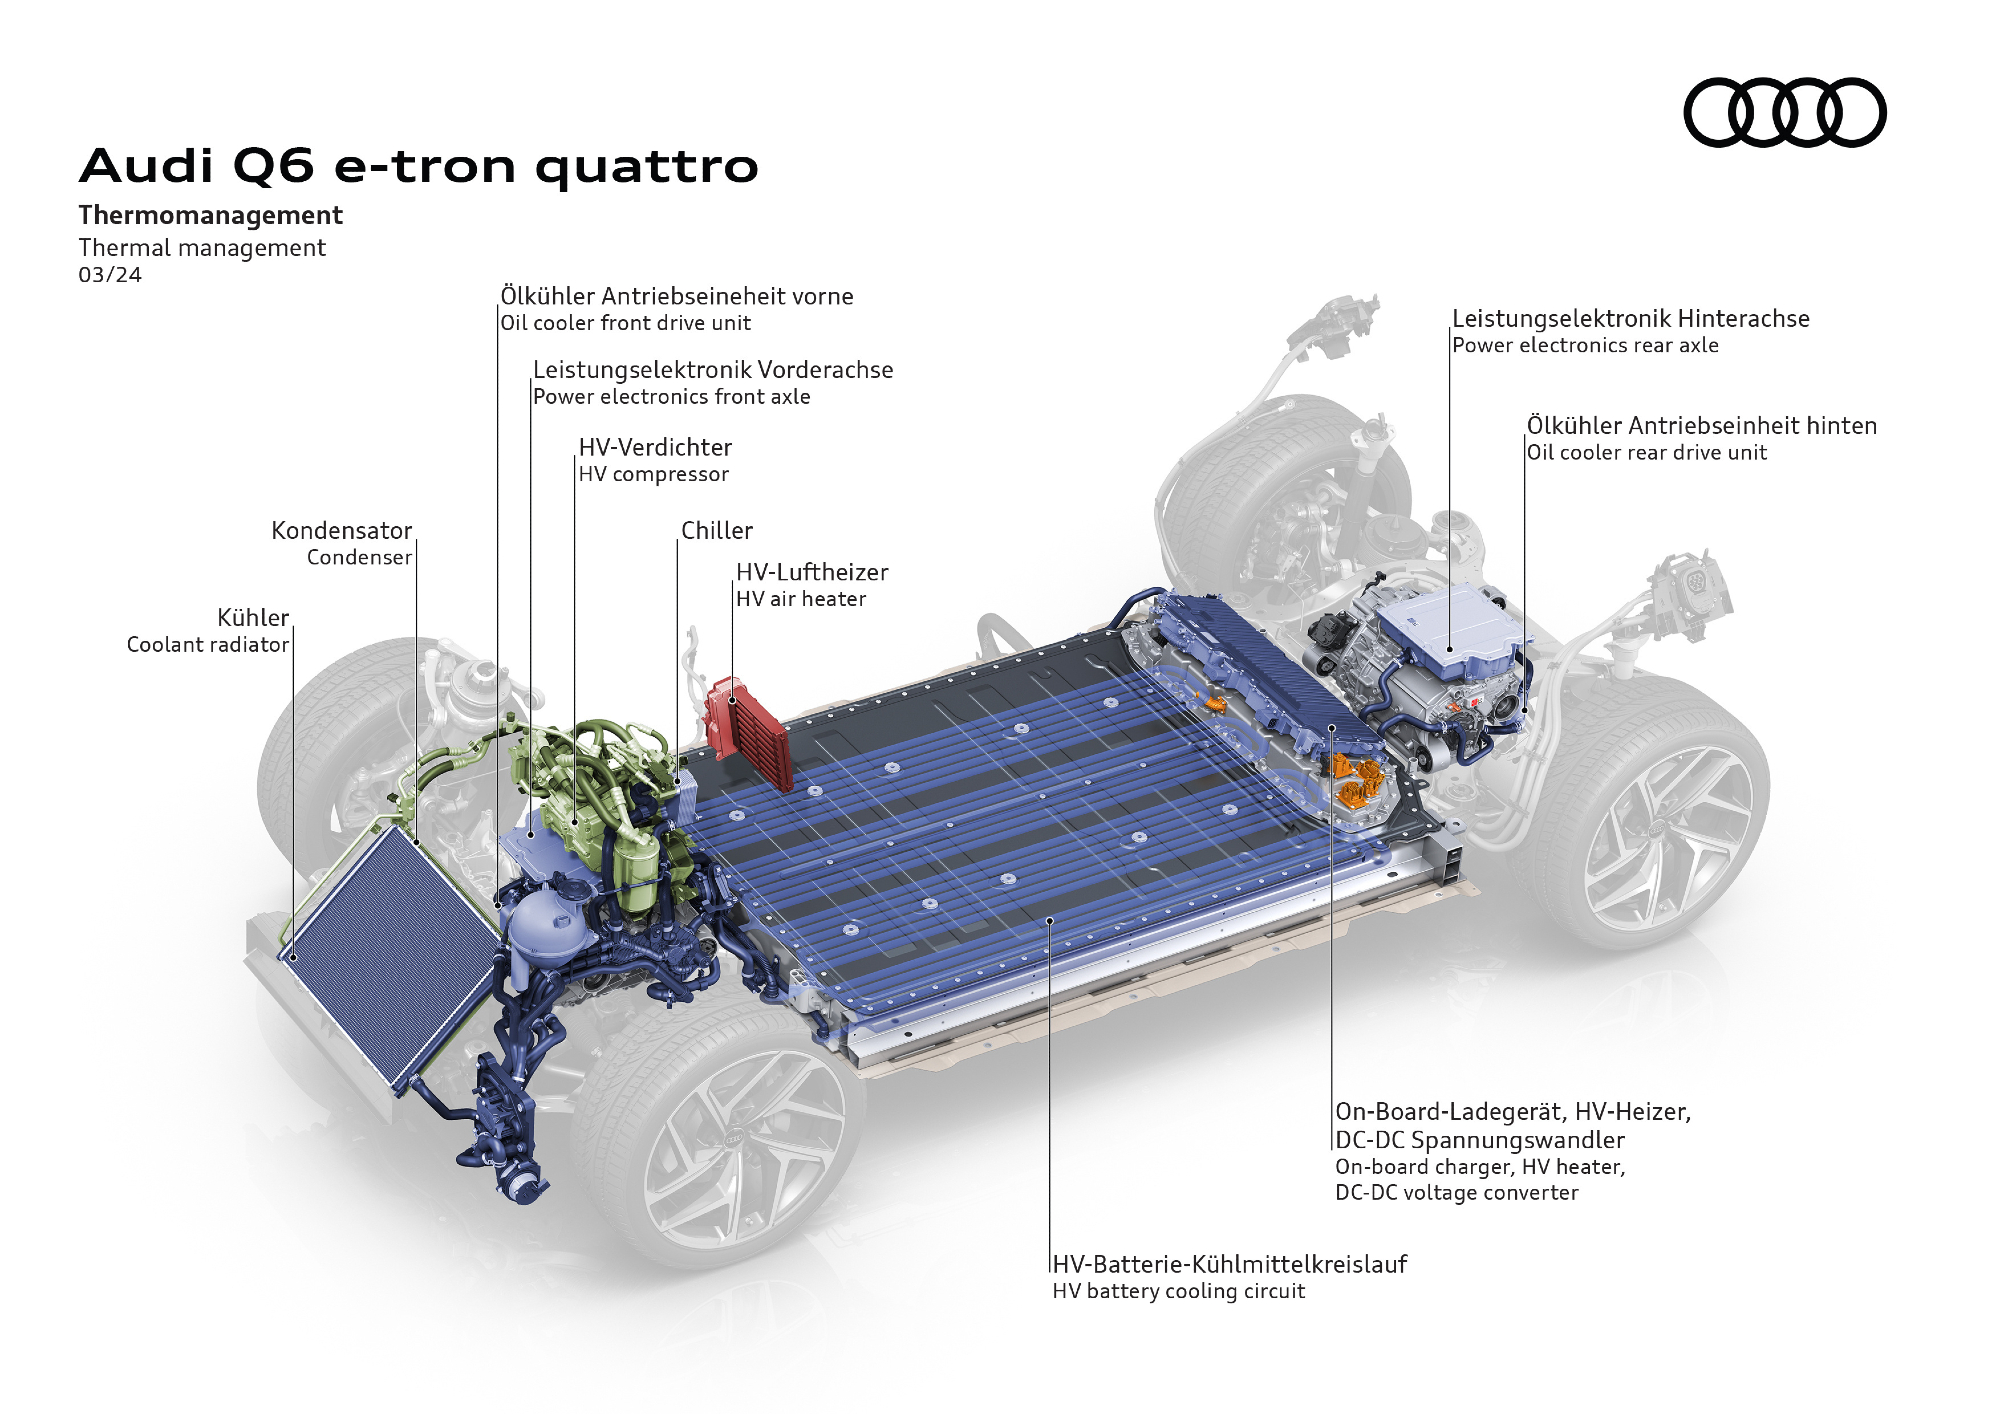 Audi Q6 e-tron thermal management.